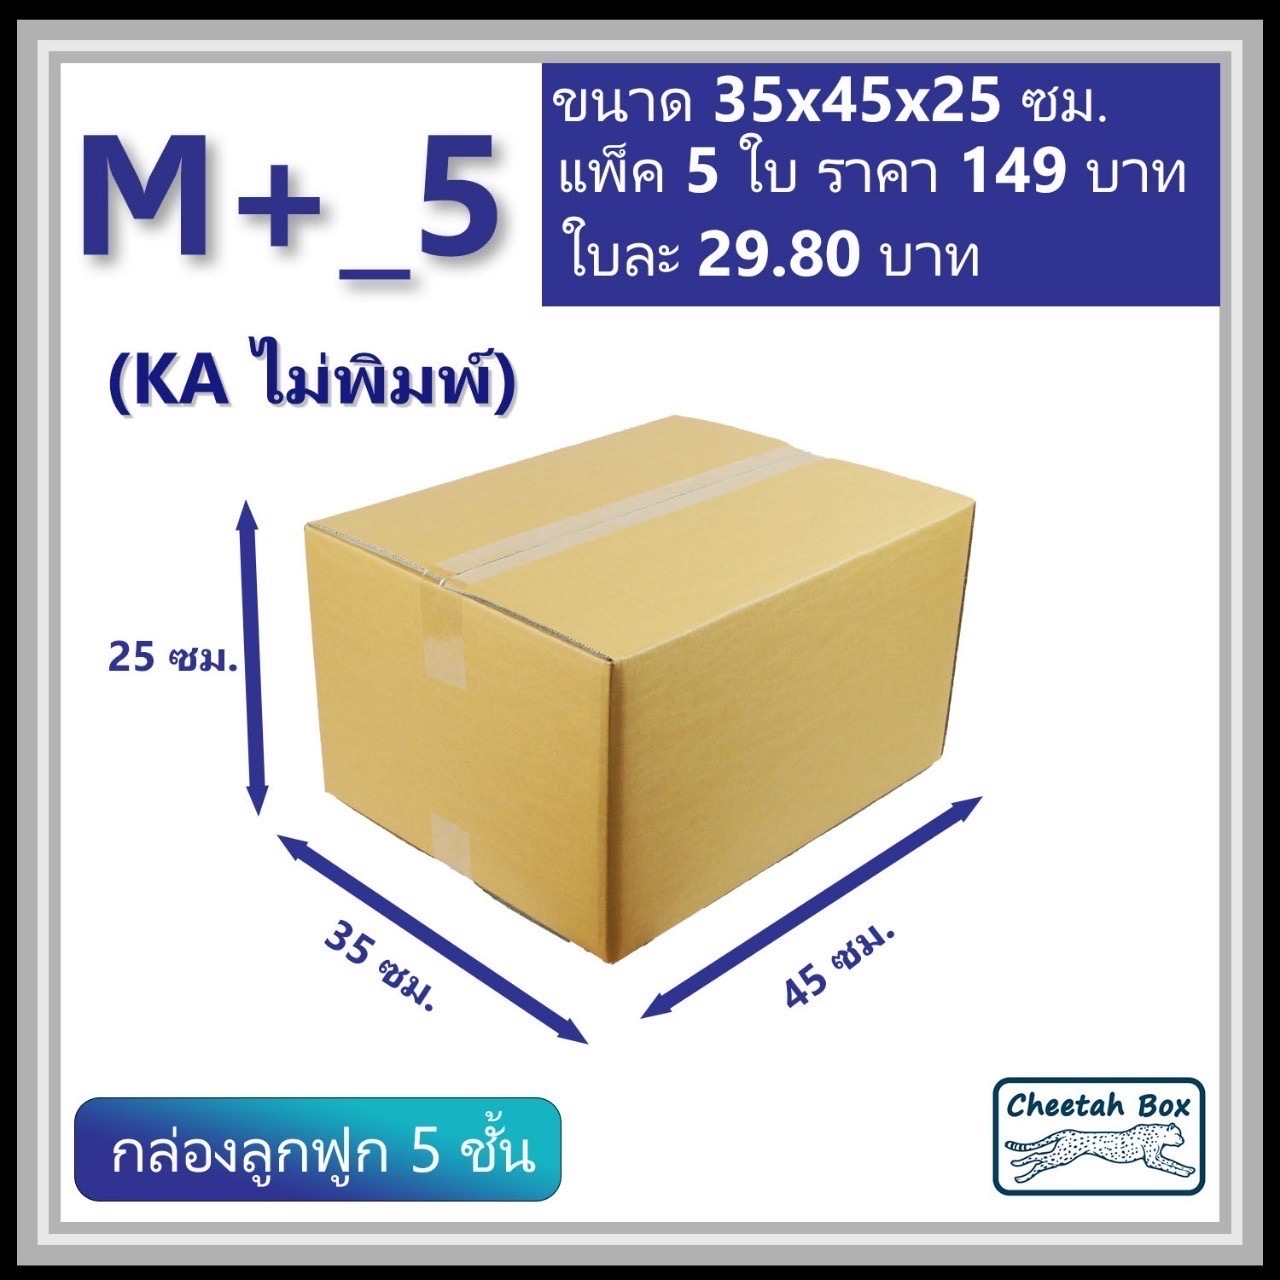 กล่องพัสดุ 5 ชั้น M+_5 (KA125) ไม่พิมพ์ (Post Box) ลูกฟูก 5 ชั้น ขนาด 35W x 45L x 25H cm.